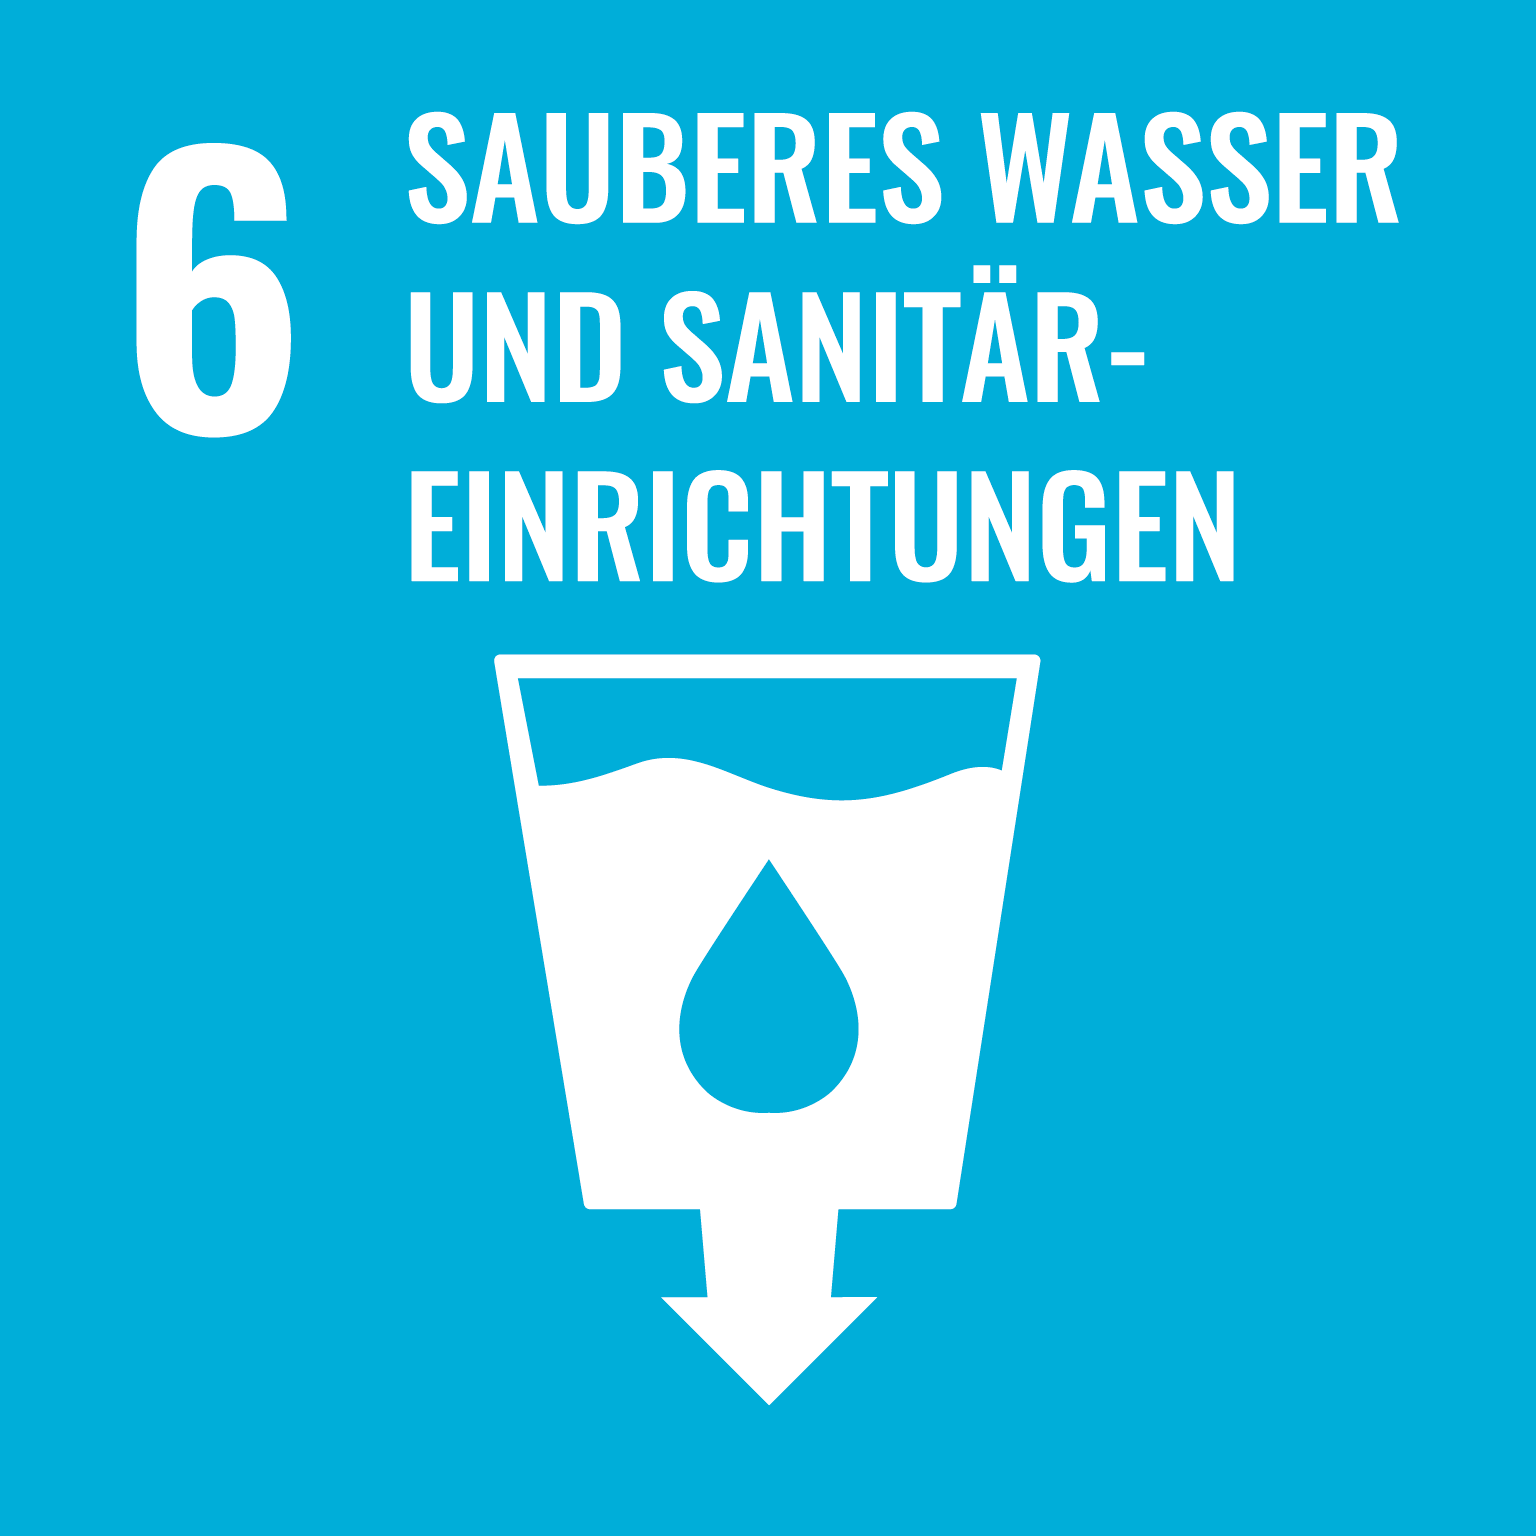 Sauberes Wasser und Sanitäreinrichtungen